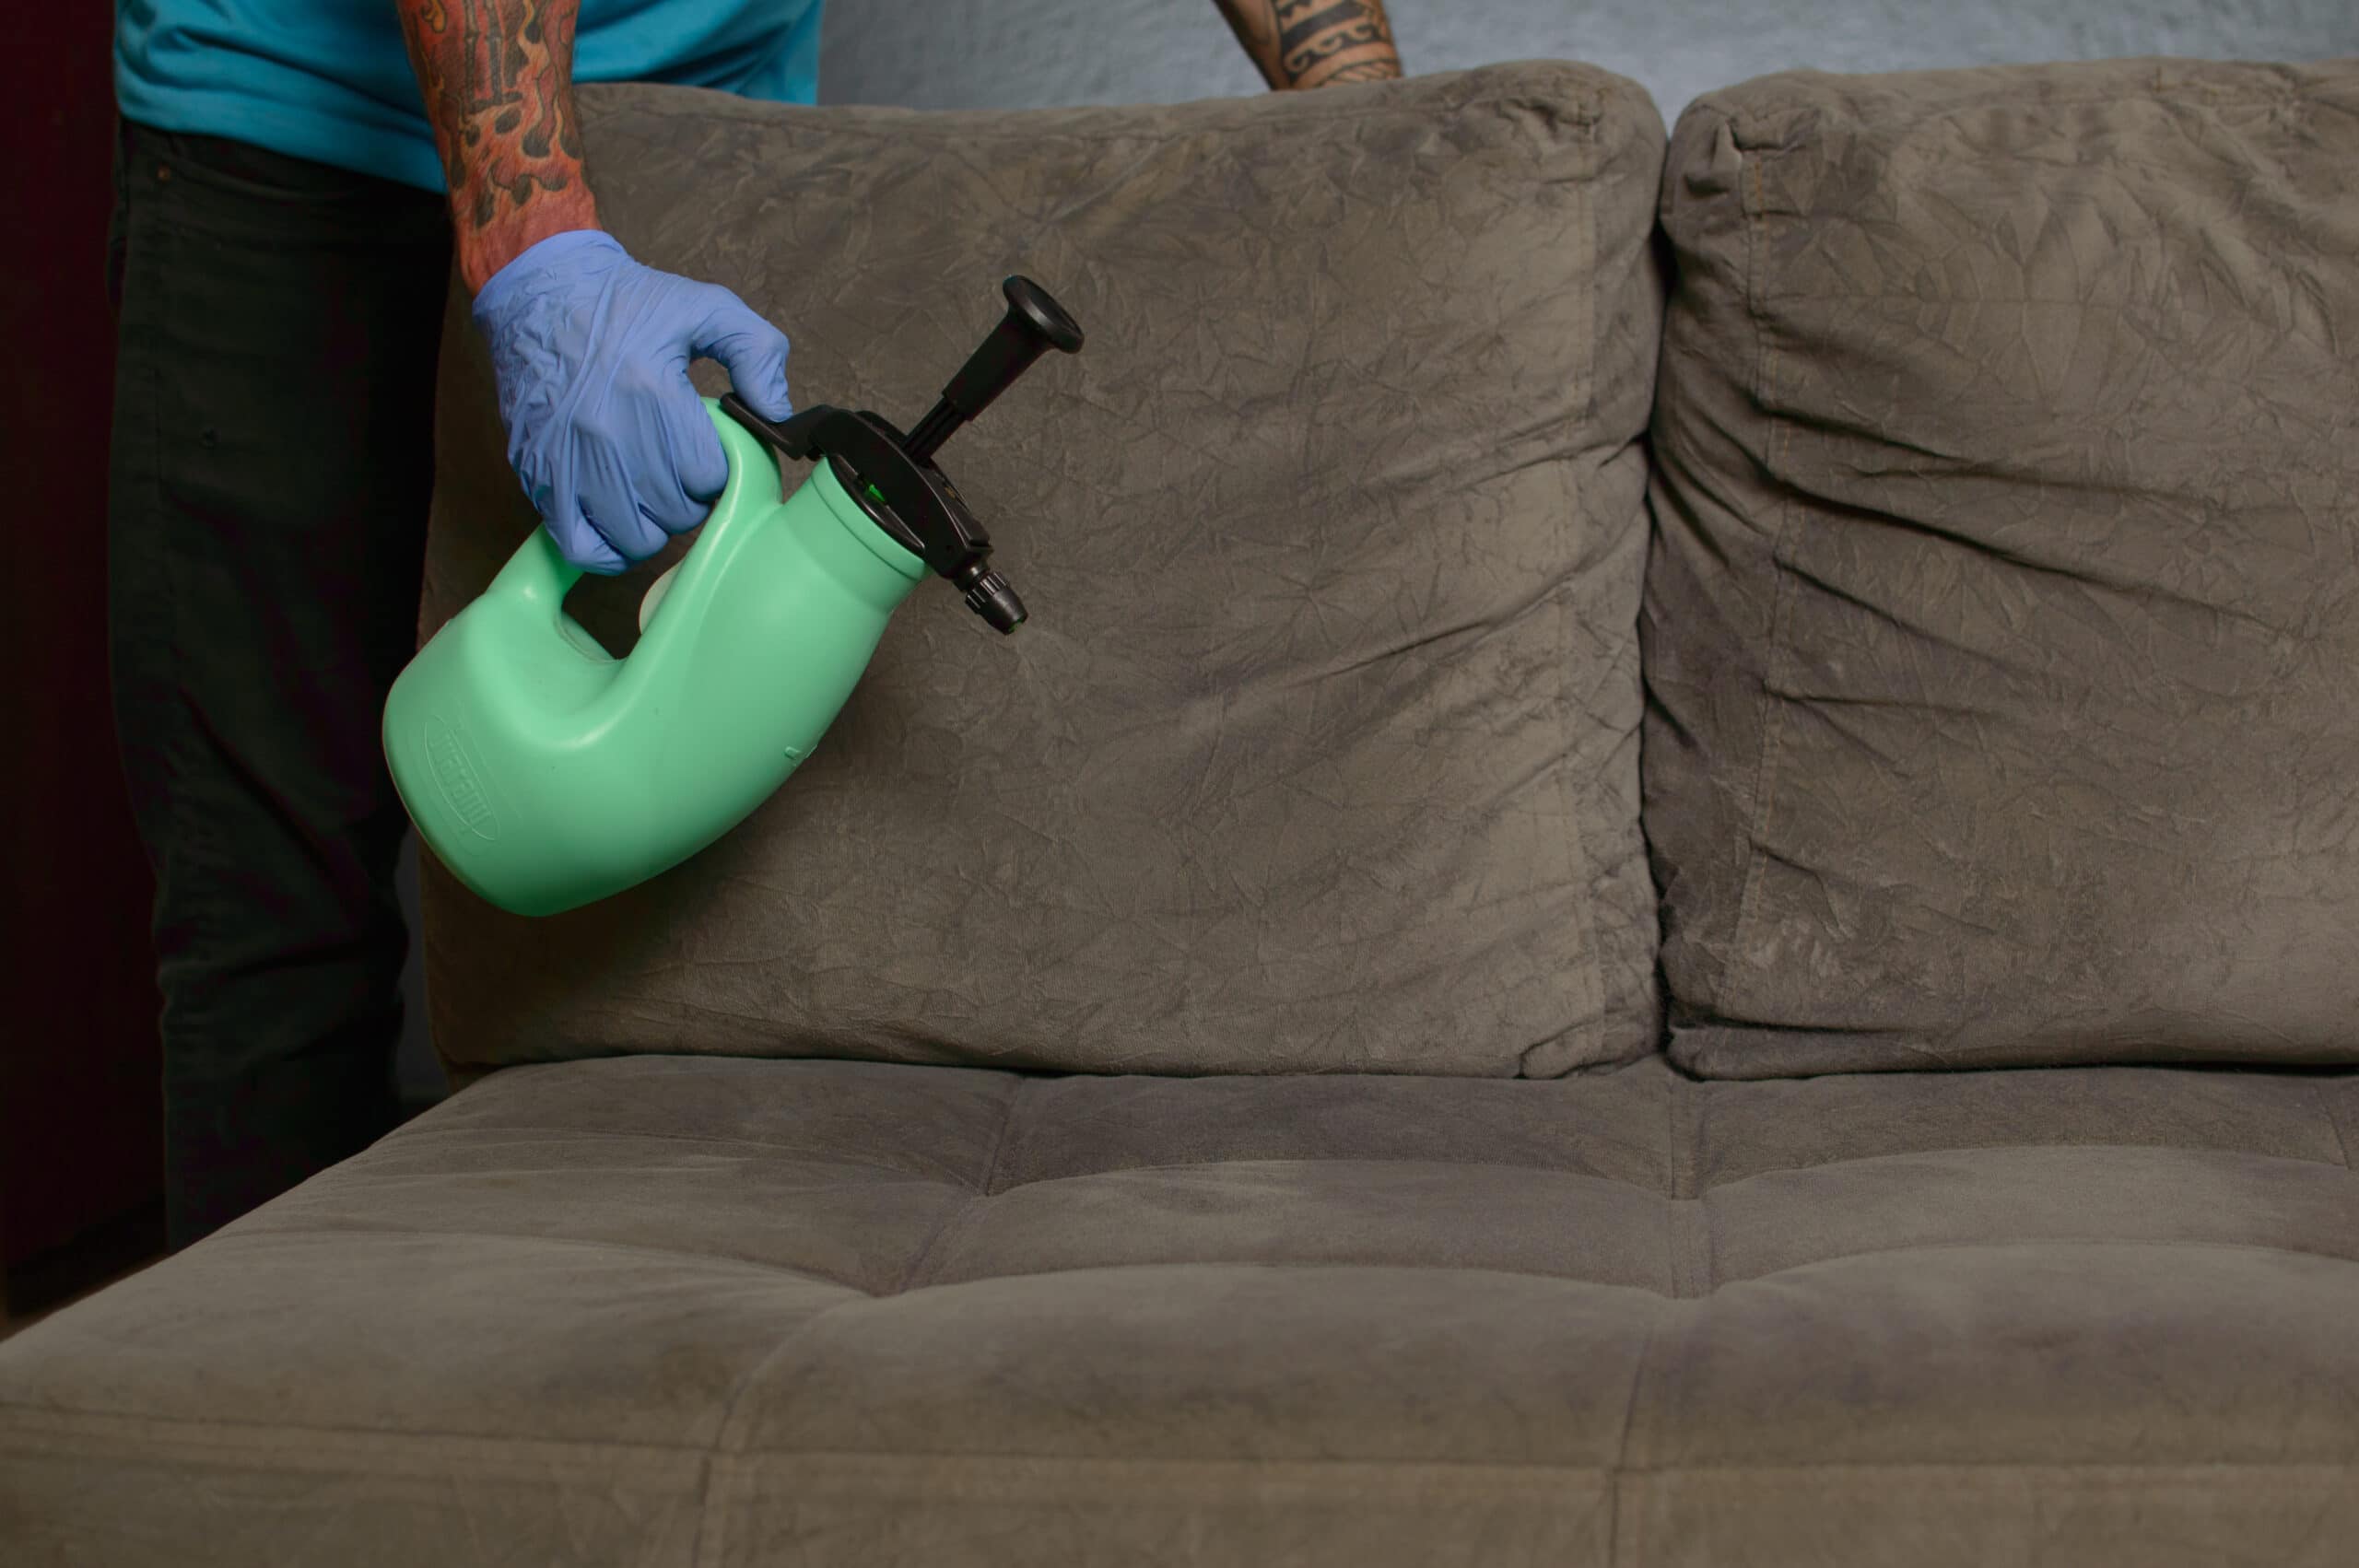 home aplicando produto de limpeza em um sofá de estofados marrom. imagem ilustrativa texto lavar sofá no cohama